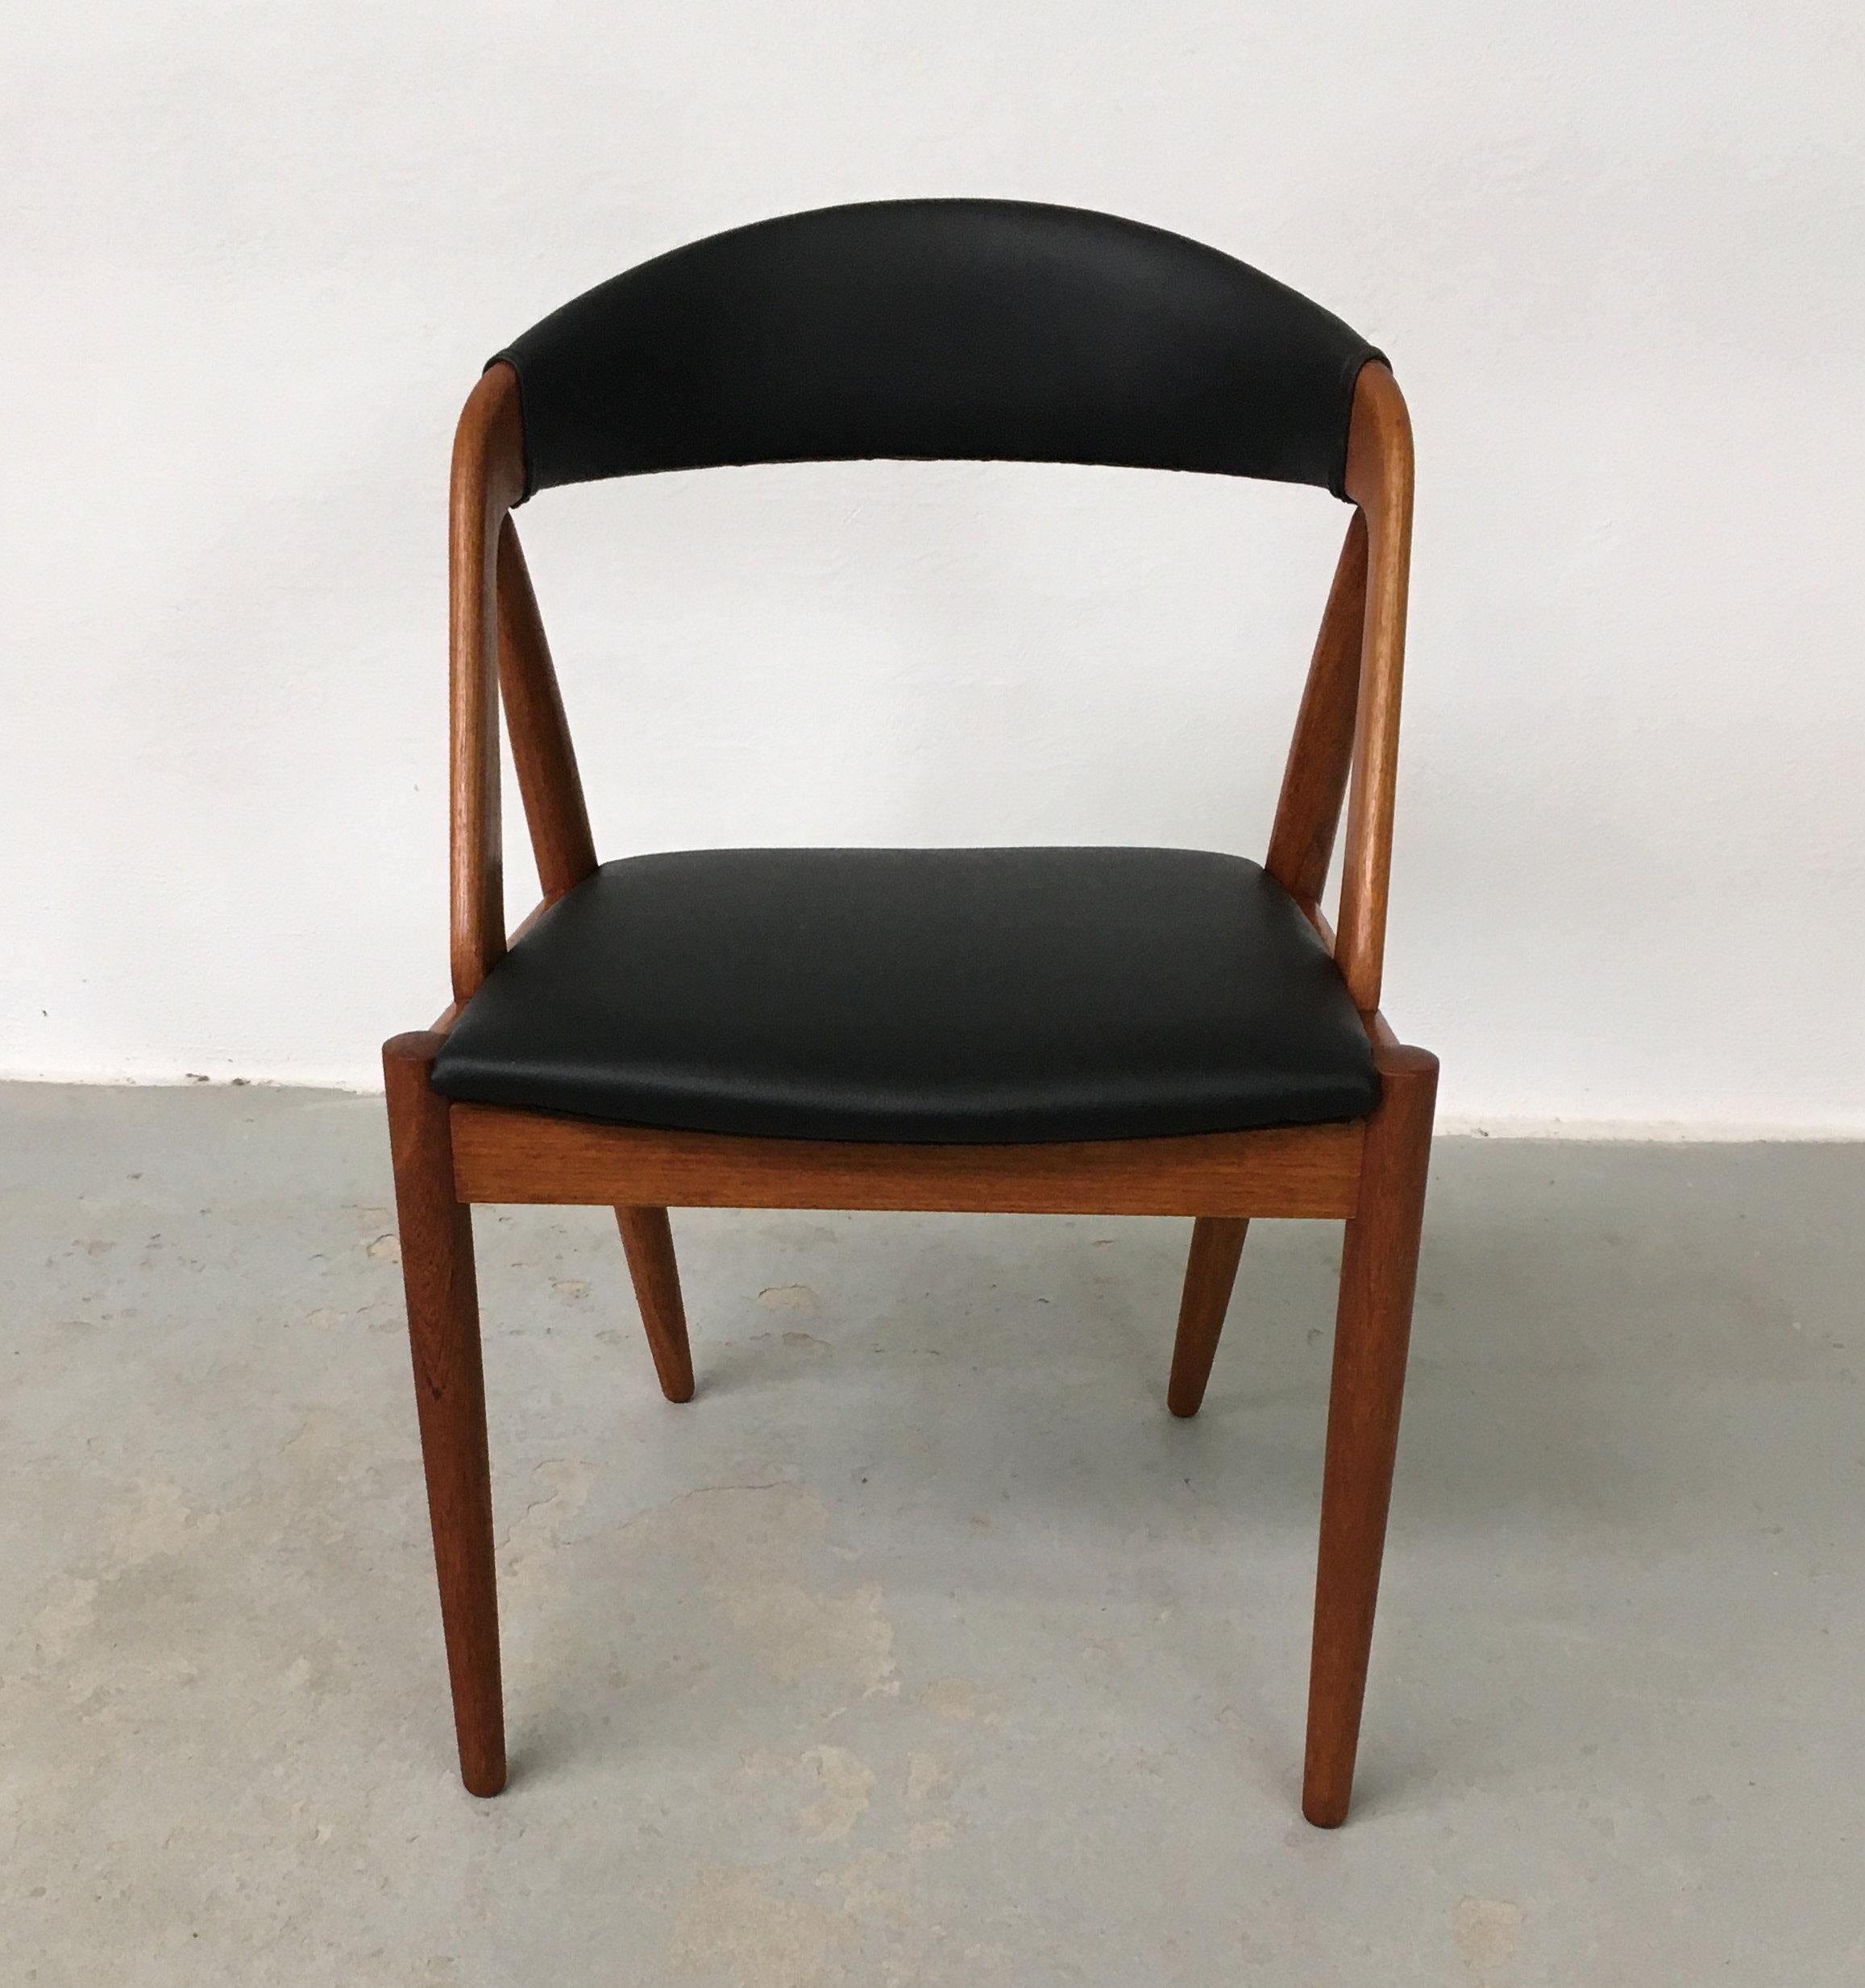 Kai Kristiansen ensemble de huit chaises de salle à manger en teck entièrement restaurées par Schou Andersens Møbel Fabrikant, y compris le rembourrage sur mesure.

Les chaises de salle à manger A-frame modèle 31 ont été conçues par Kai Kristiansen